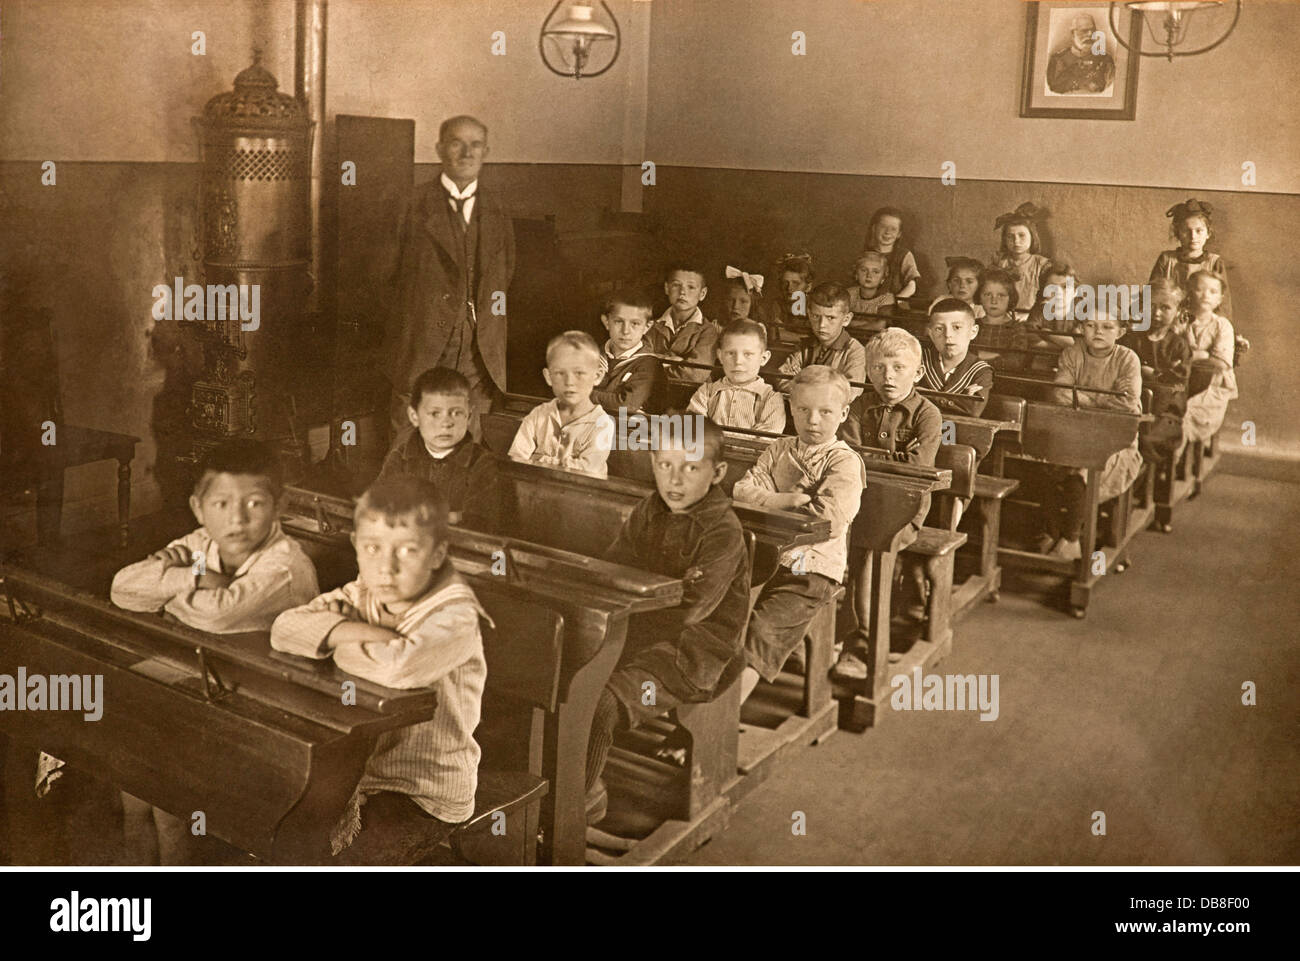 Pédagogie, école, classe, garçons et filles assis séparés, photo du dernier roi de Bavière Ludwig II en arrière-plan, Kitzingen am main, Bavière, Allemagne, 1914, droits additionnels-Clearences-non disponible Banque D'Images